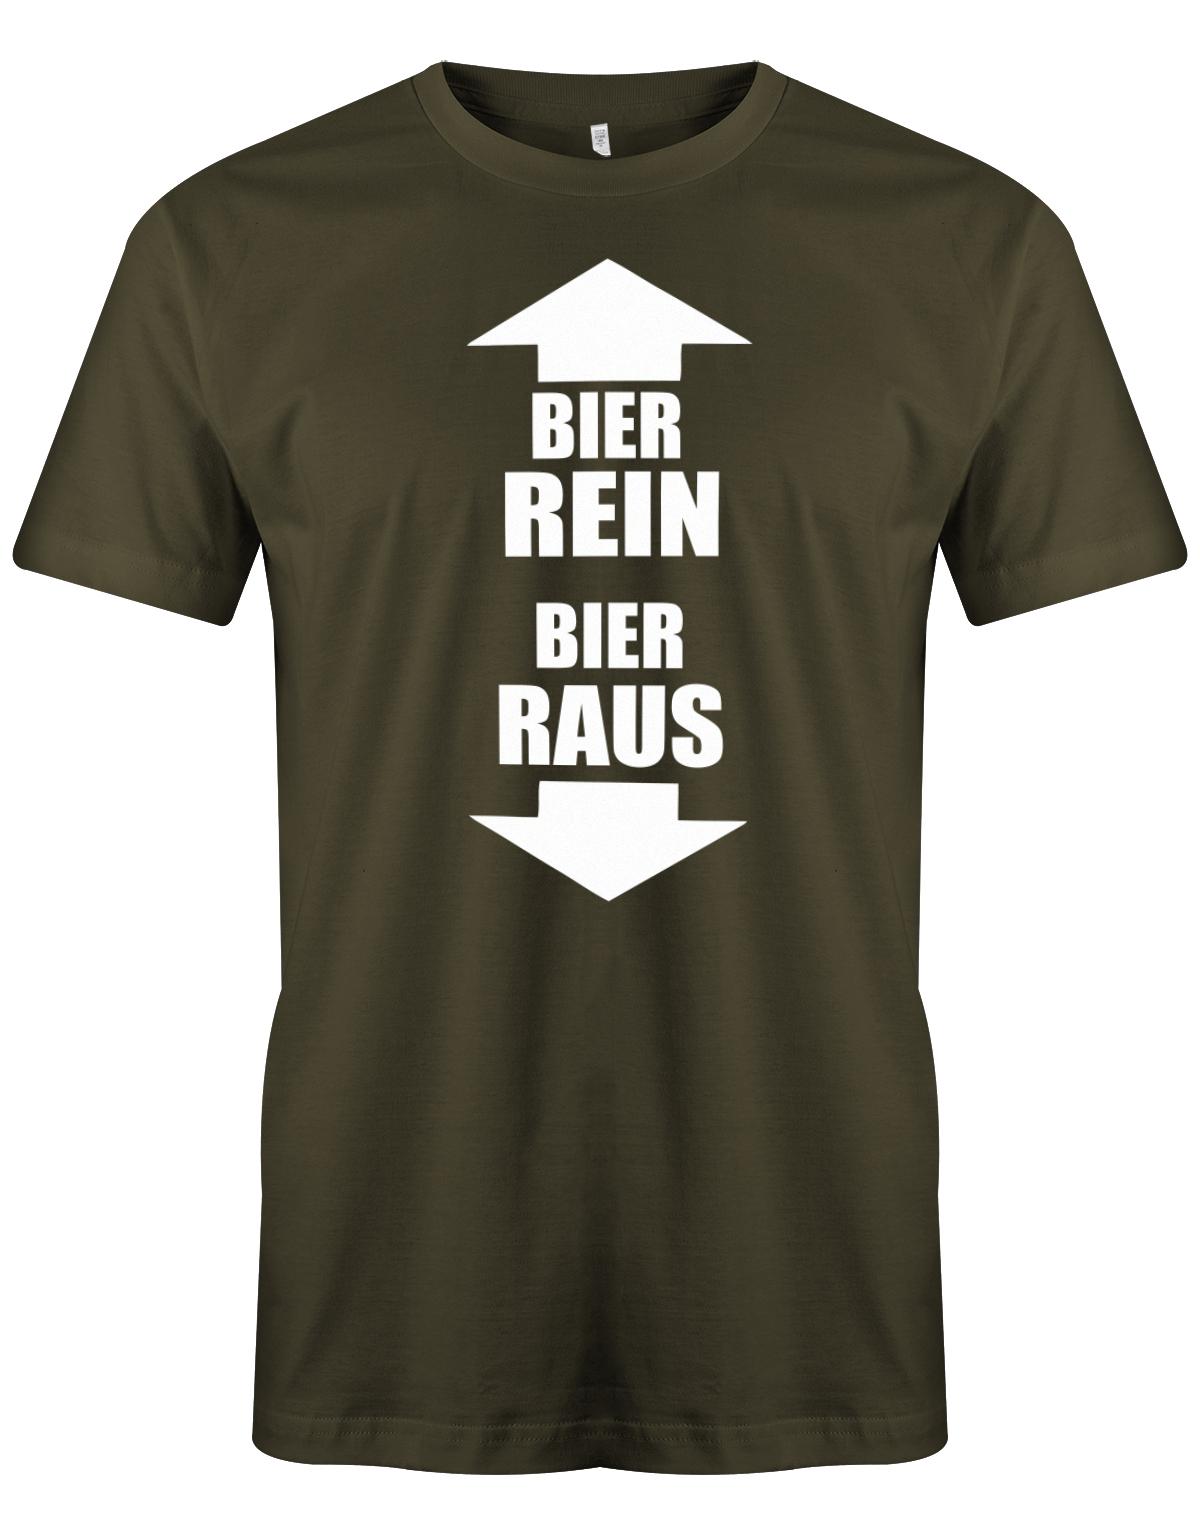 Bier-rein-Bier-raus-Bier-Shirt-Herren-Army